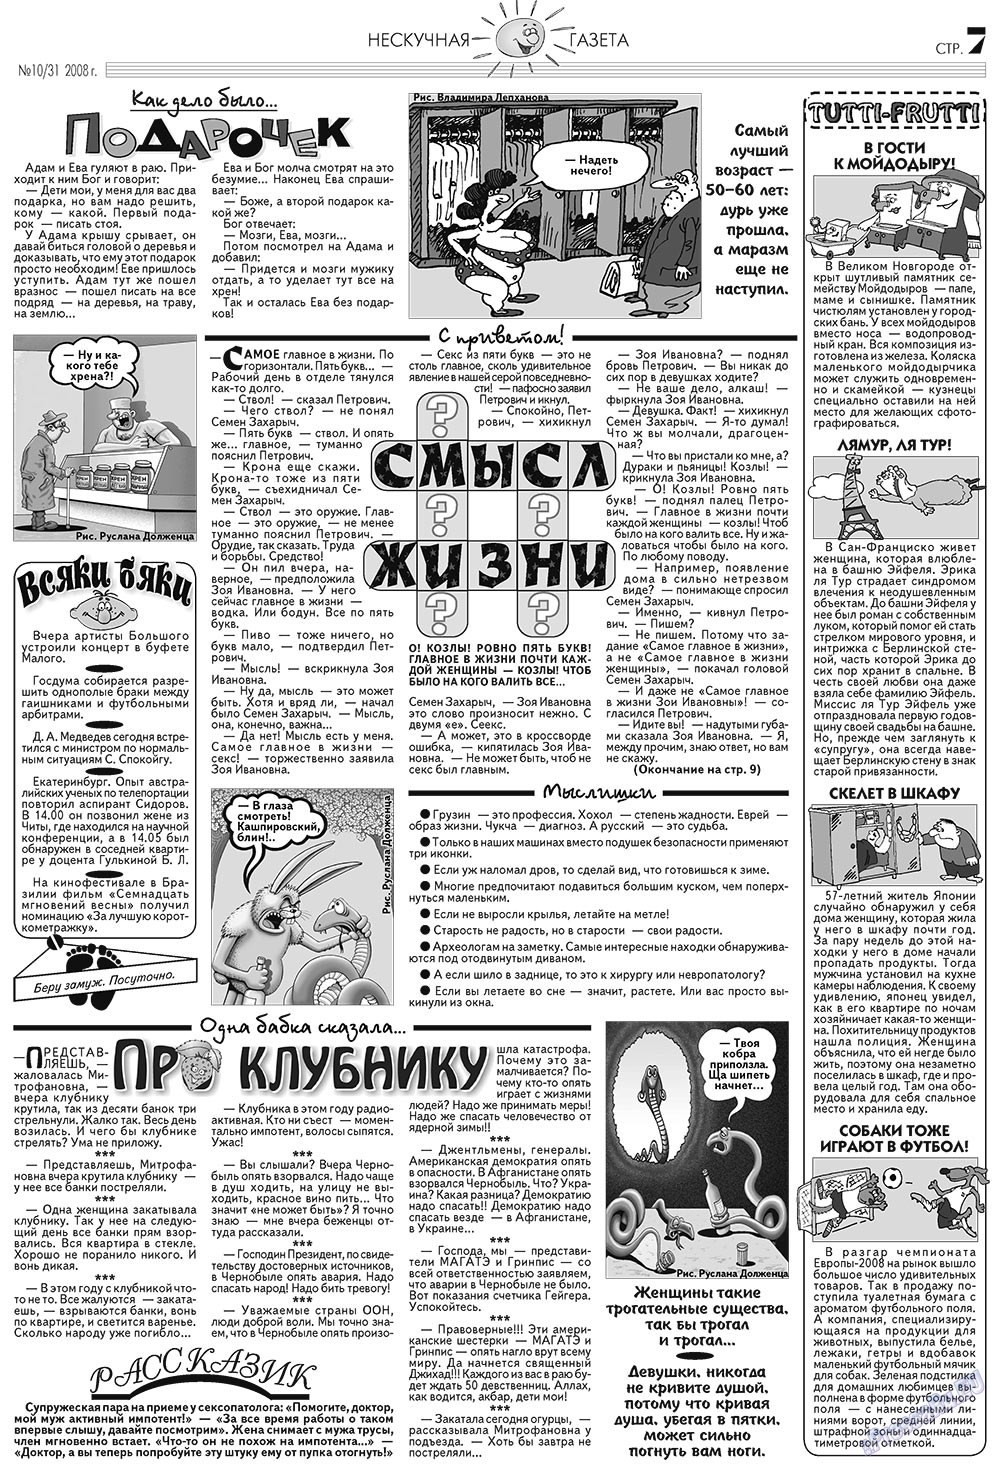 Нескучная газета (журнал). 2008 год, номер 10, стр. 7